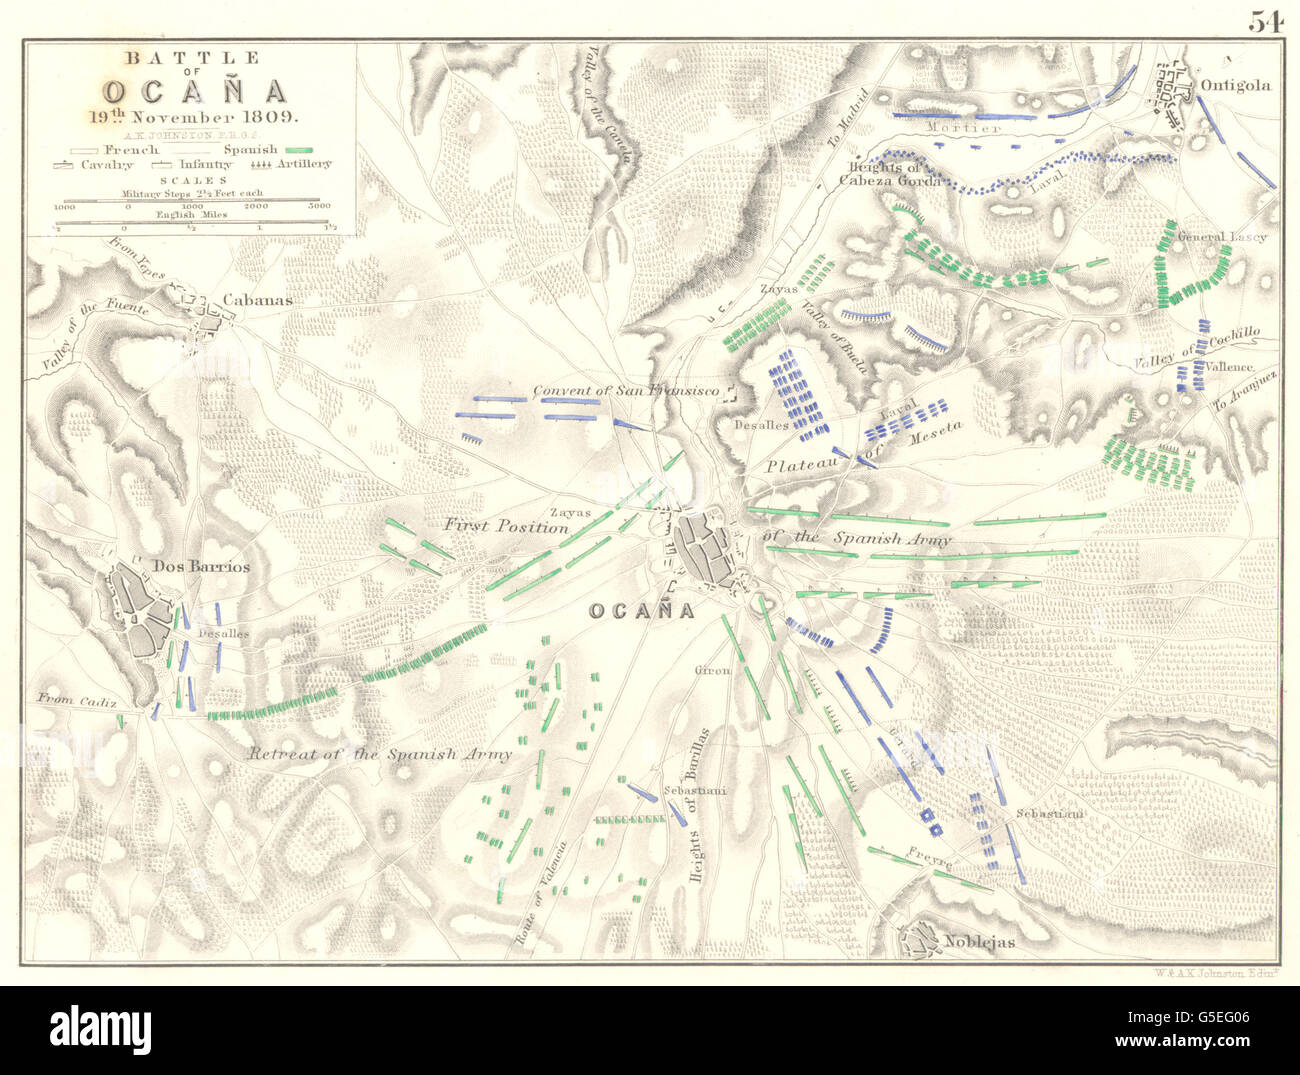 Schlacht von OCANA: 19. November 1809. Spanien. Napoleonische Kriege, 1848 Antike Landkarte Stockfoto